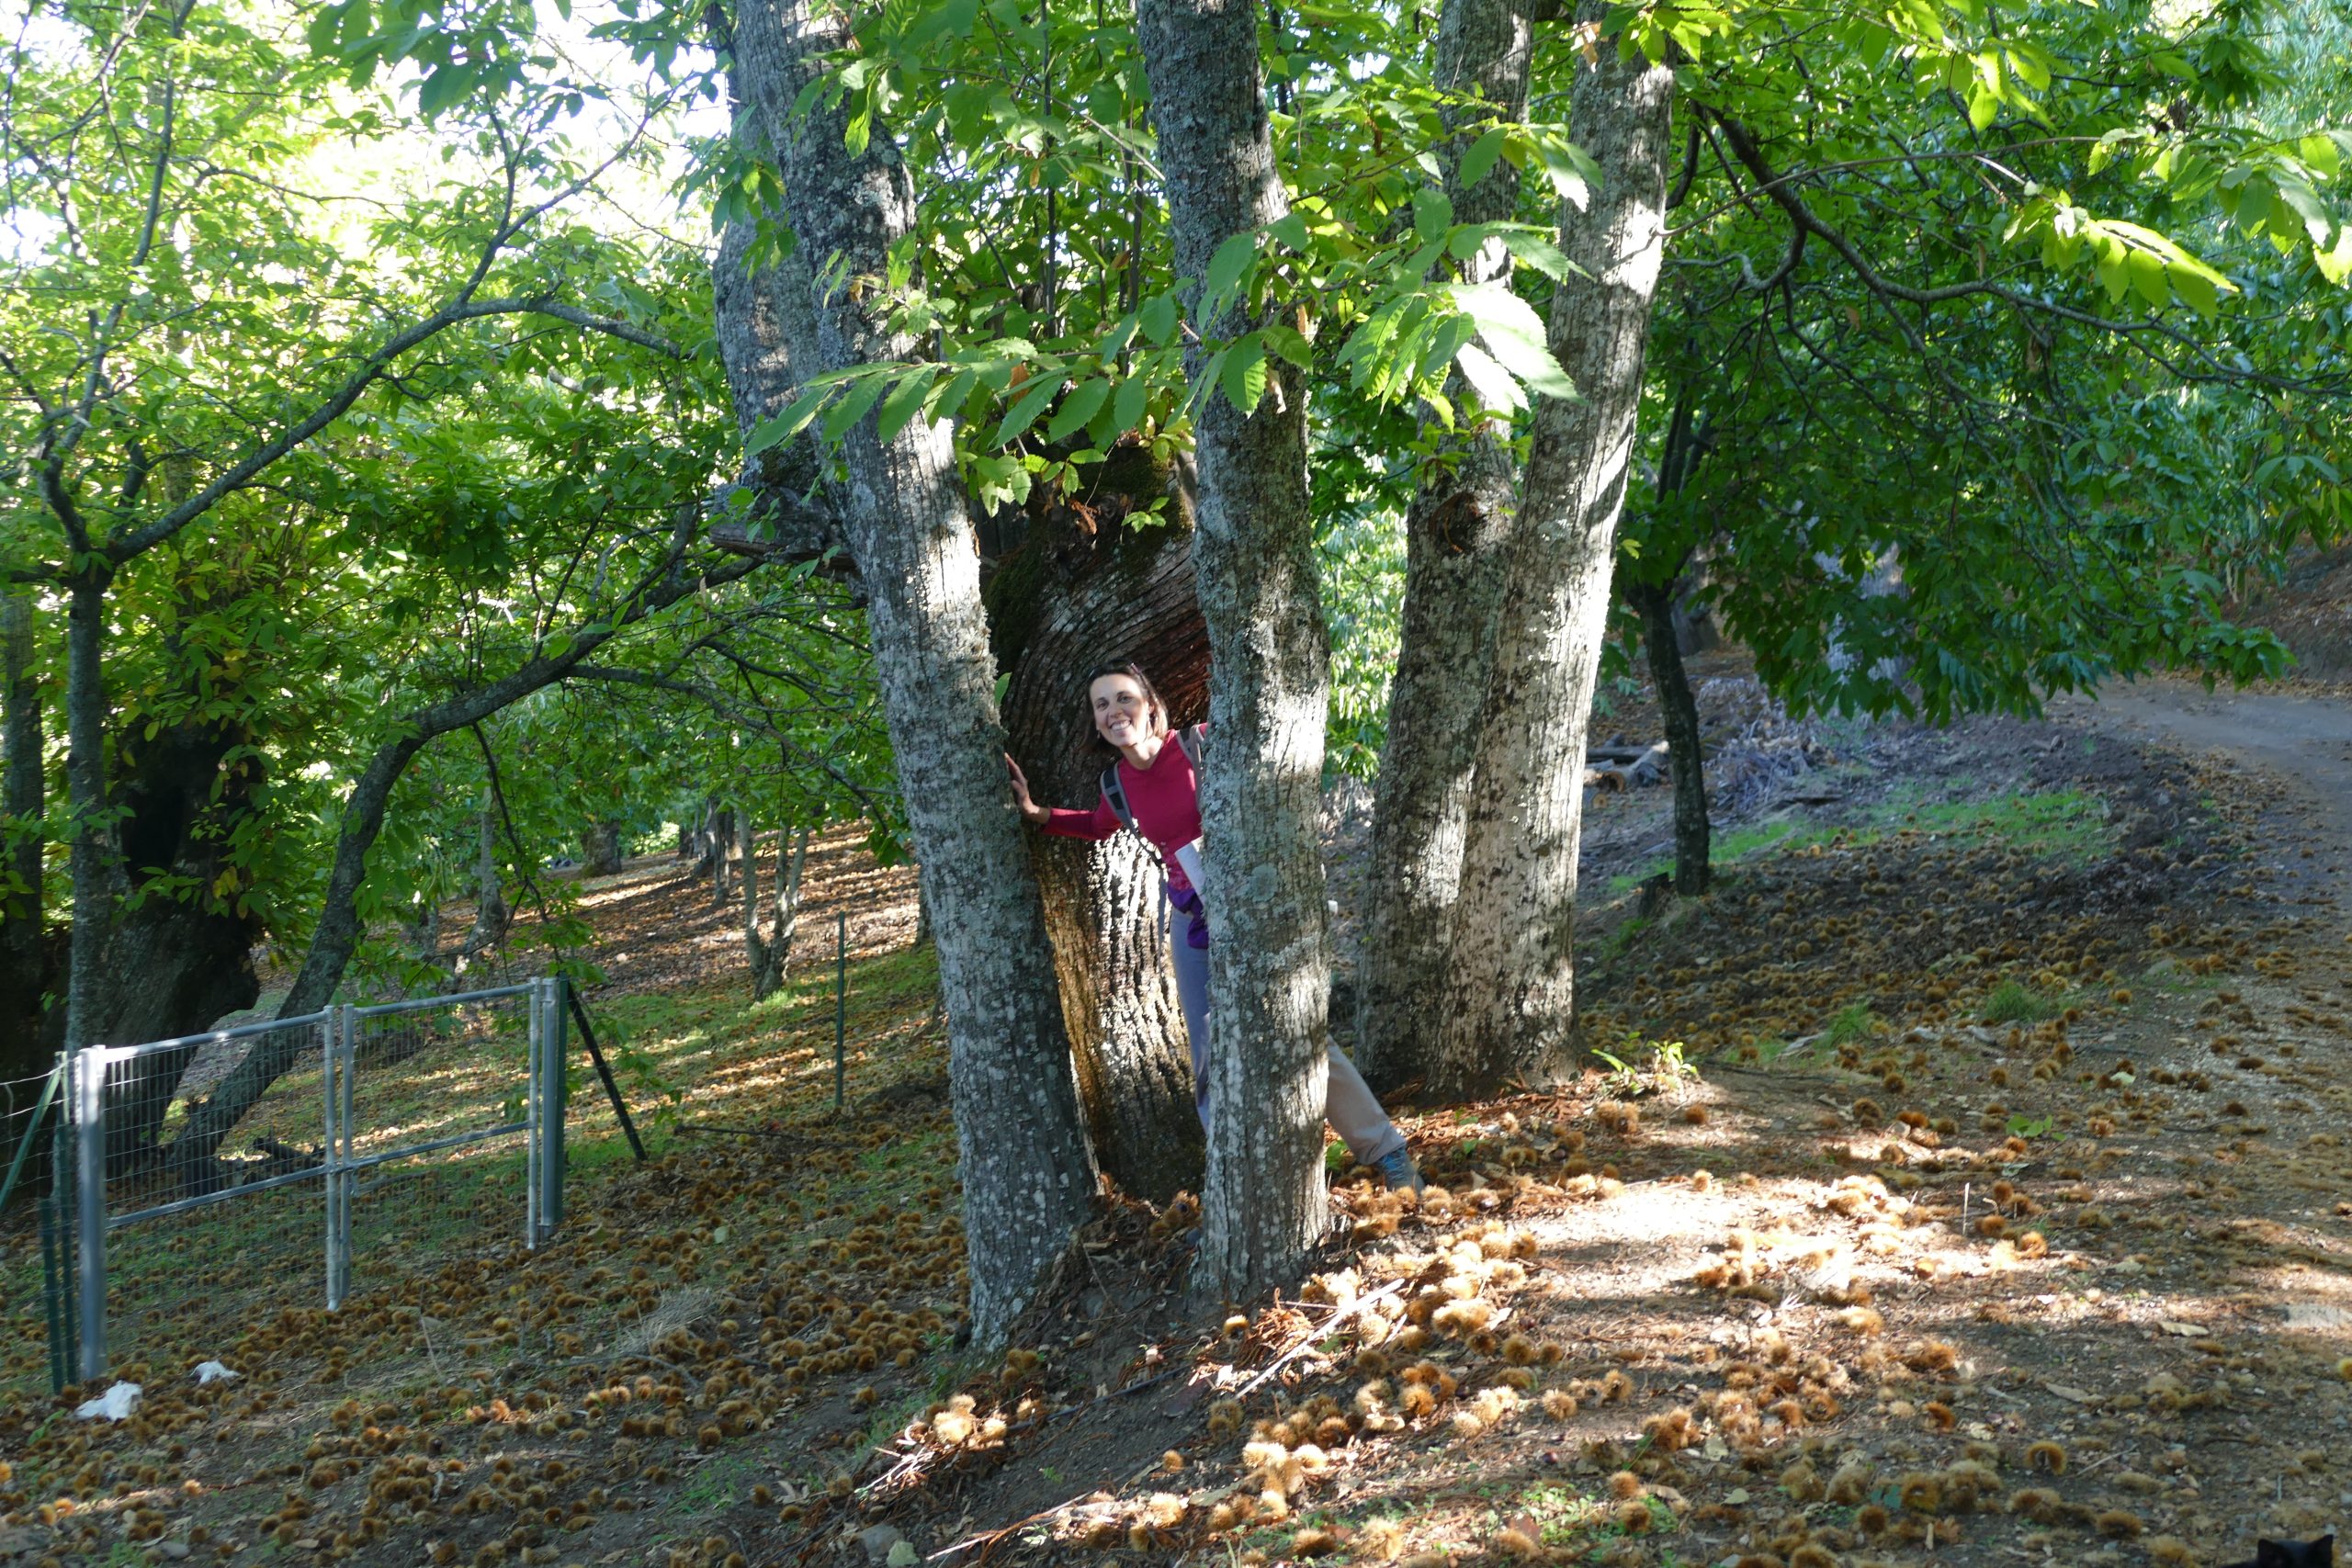 En los castañares antiguos, coexisten árboles veteranos y jóvenes.